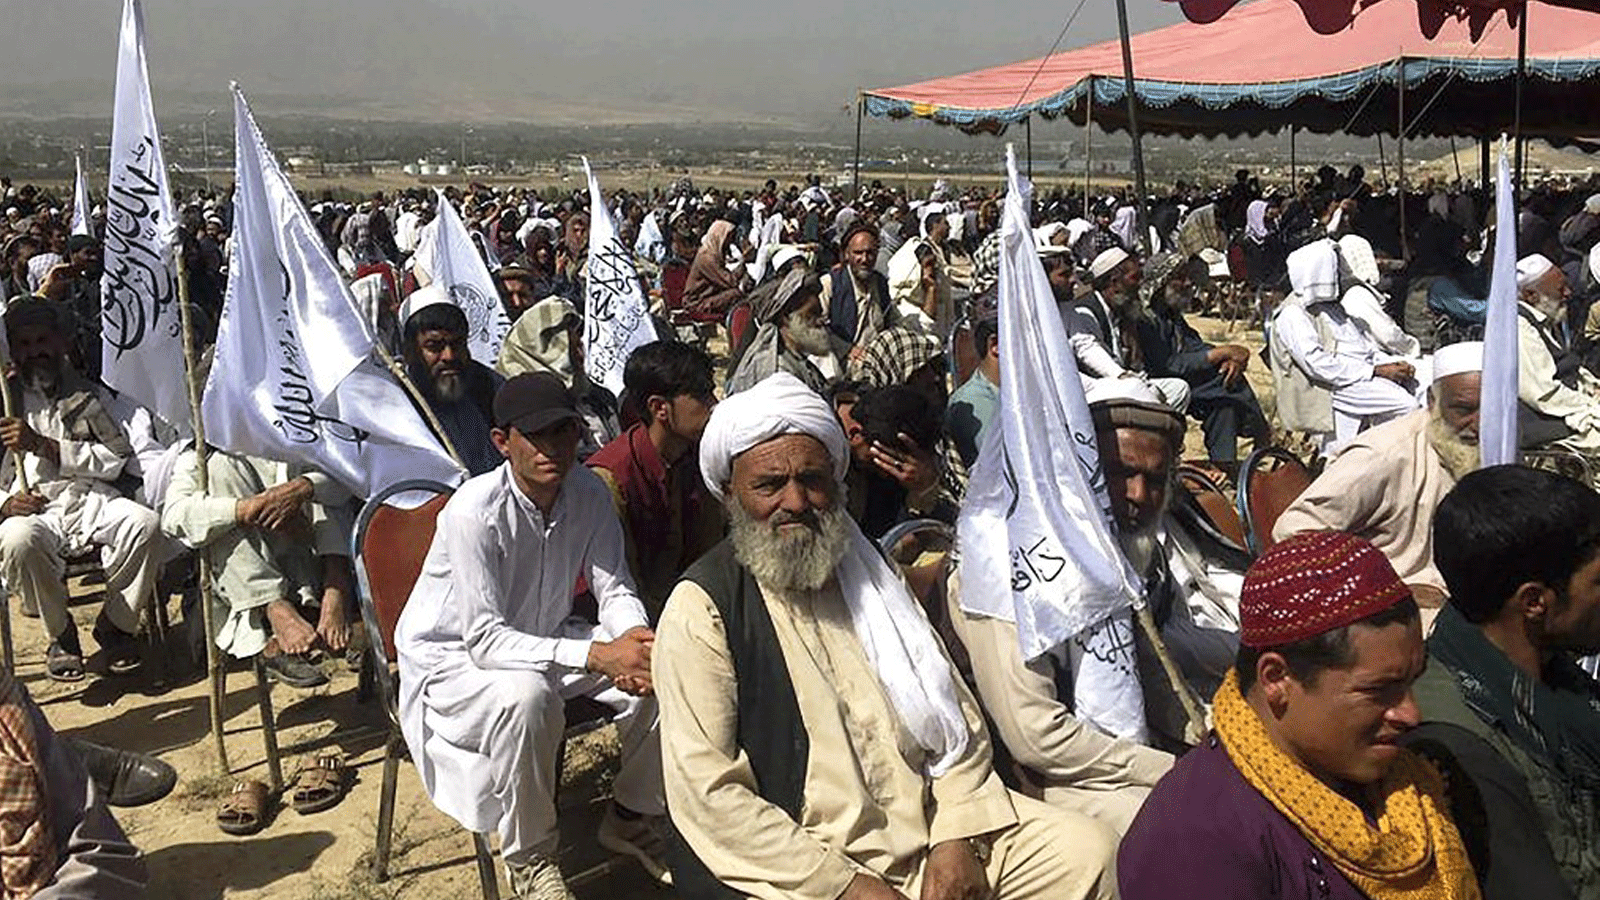 أنصار طالبان يحضرون مسيرة في الهواء الطلق في أحد الحقول في كابول في 3 تشرين الاول/ أكتوبر 2021